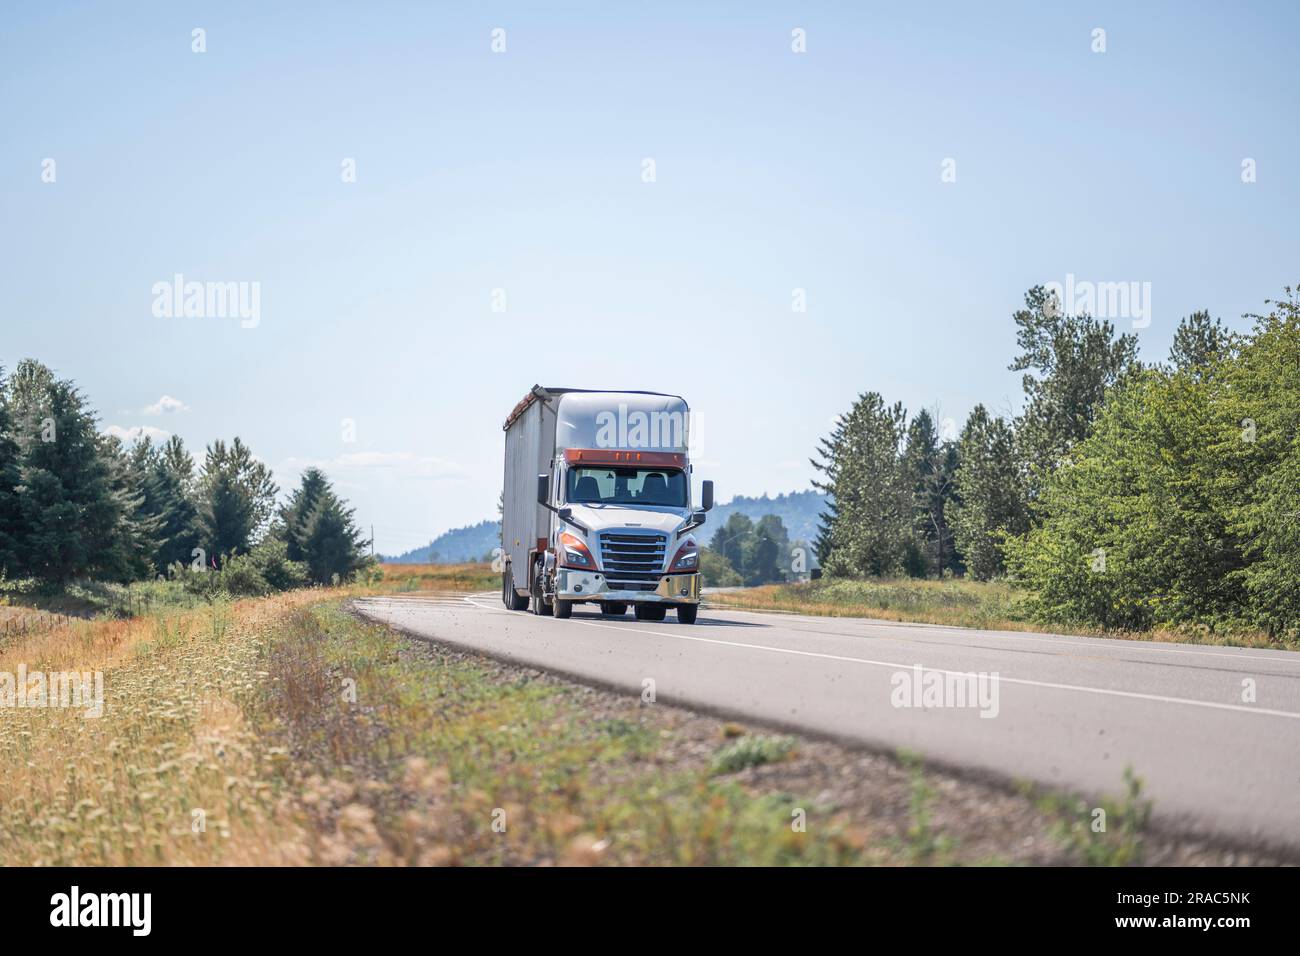 Industrielles weißes Day Cab großer Truck mit Motorhaube klassischer Sattelschlepper, der gewerbliche Fracht in einem abgedeckten Sattelanhänger transportiert, während der schmale Sommer-sce gefahren wird Stockfoto